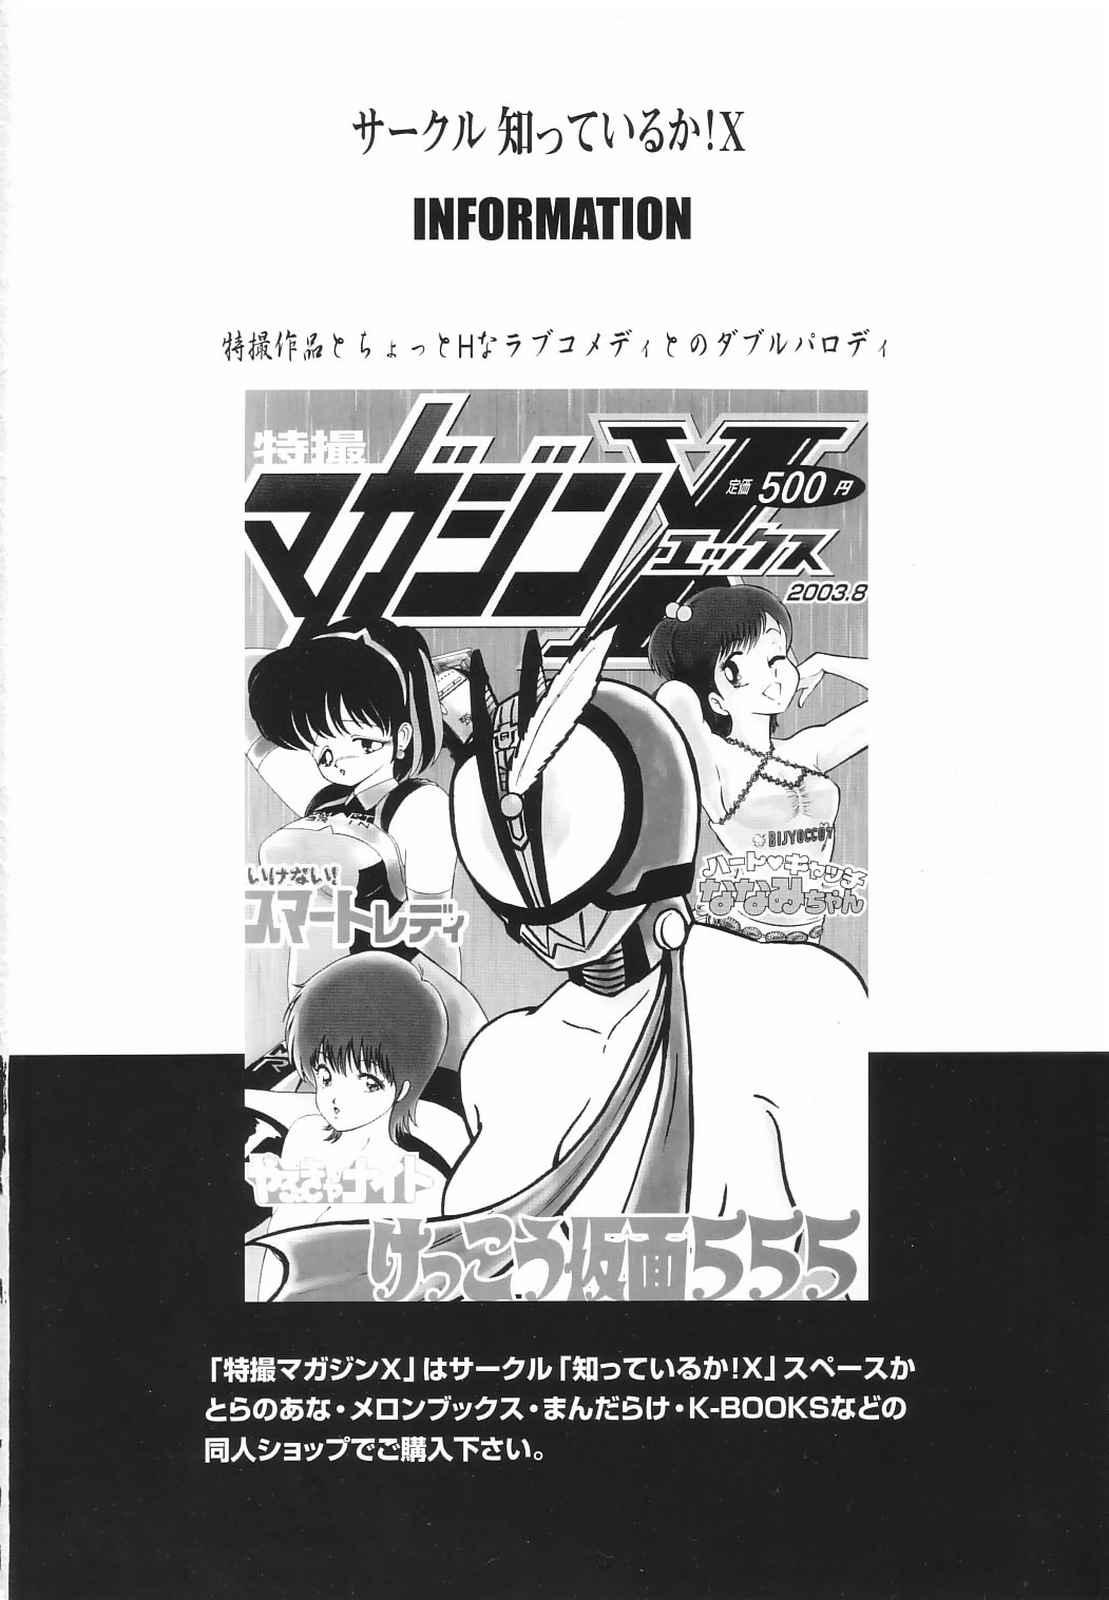 Letsdoeit Tokusatsu Magazine x 2003 Fuyu Gou - Sailor moon Ichigo 100 Asstomouth - Page 2